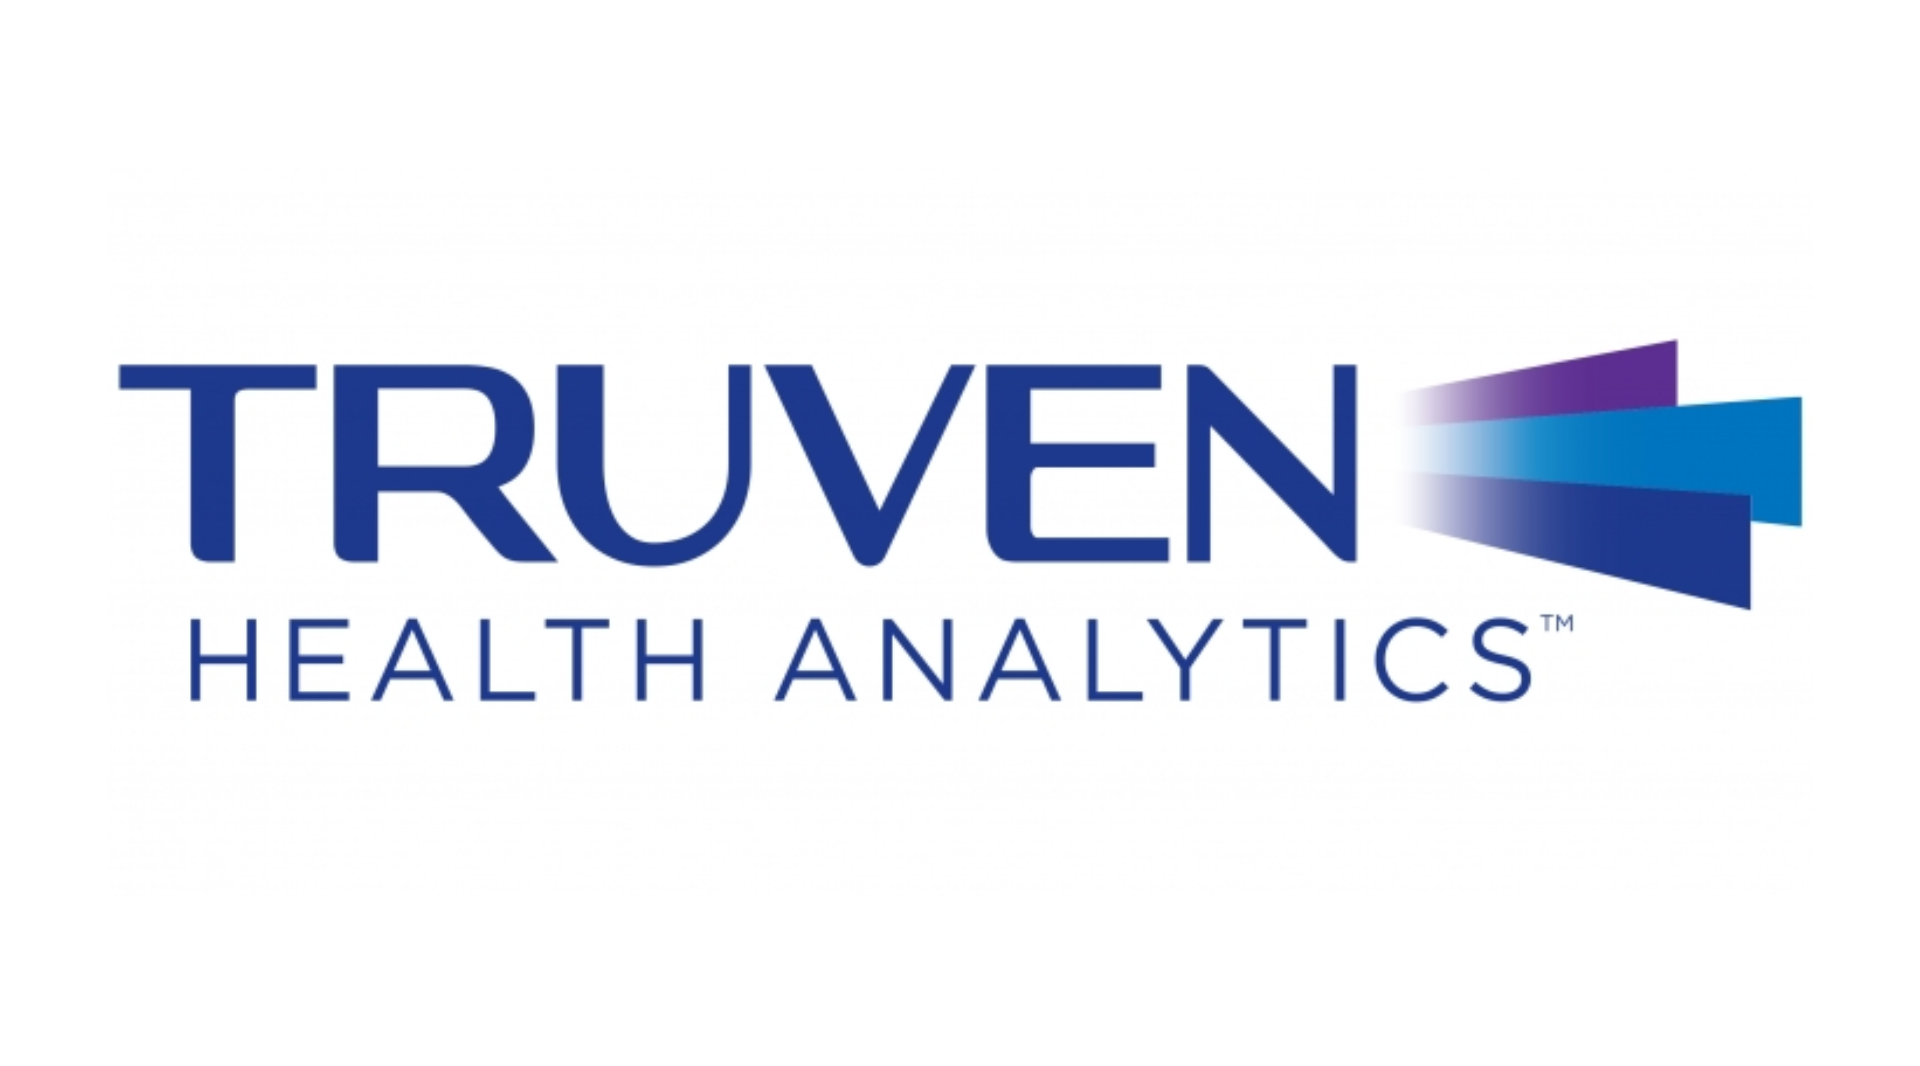 MV integra as Soluções Micromedex® da Truven Health Analytics ao prontuário eletrônico do SOUL MV